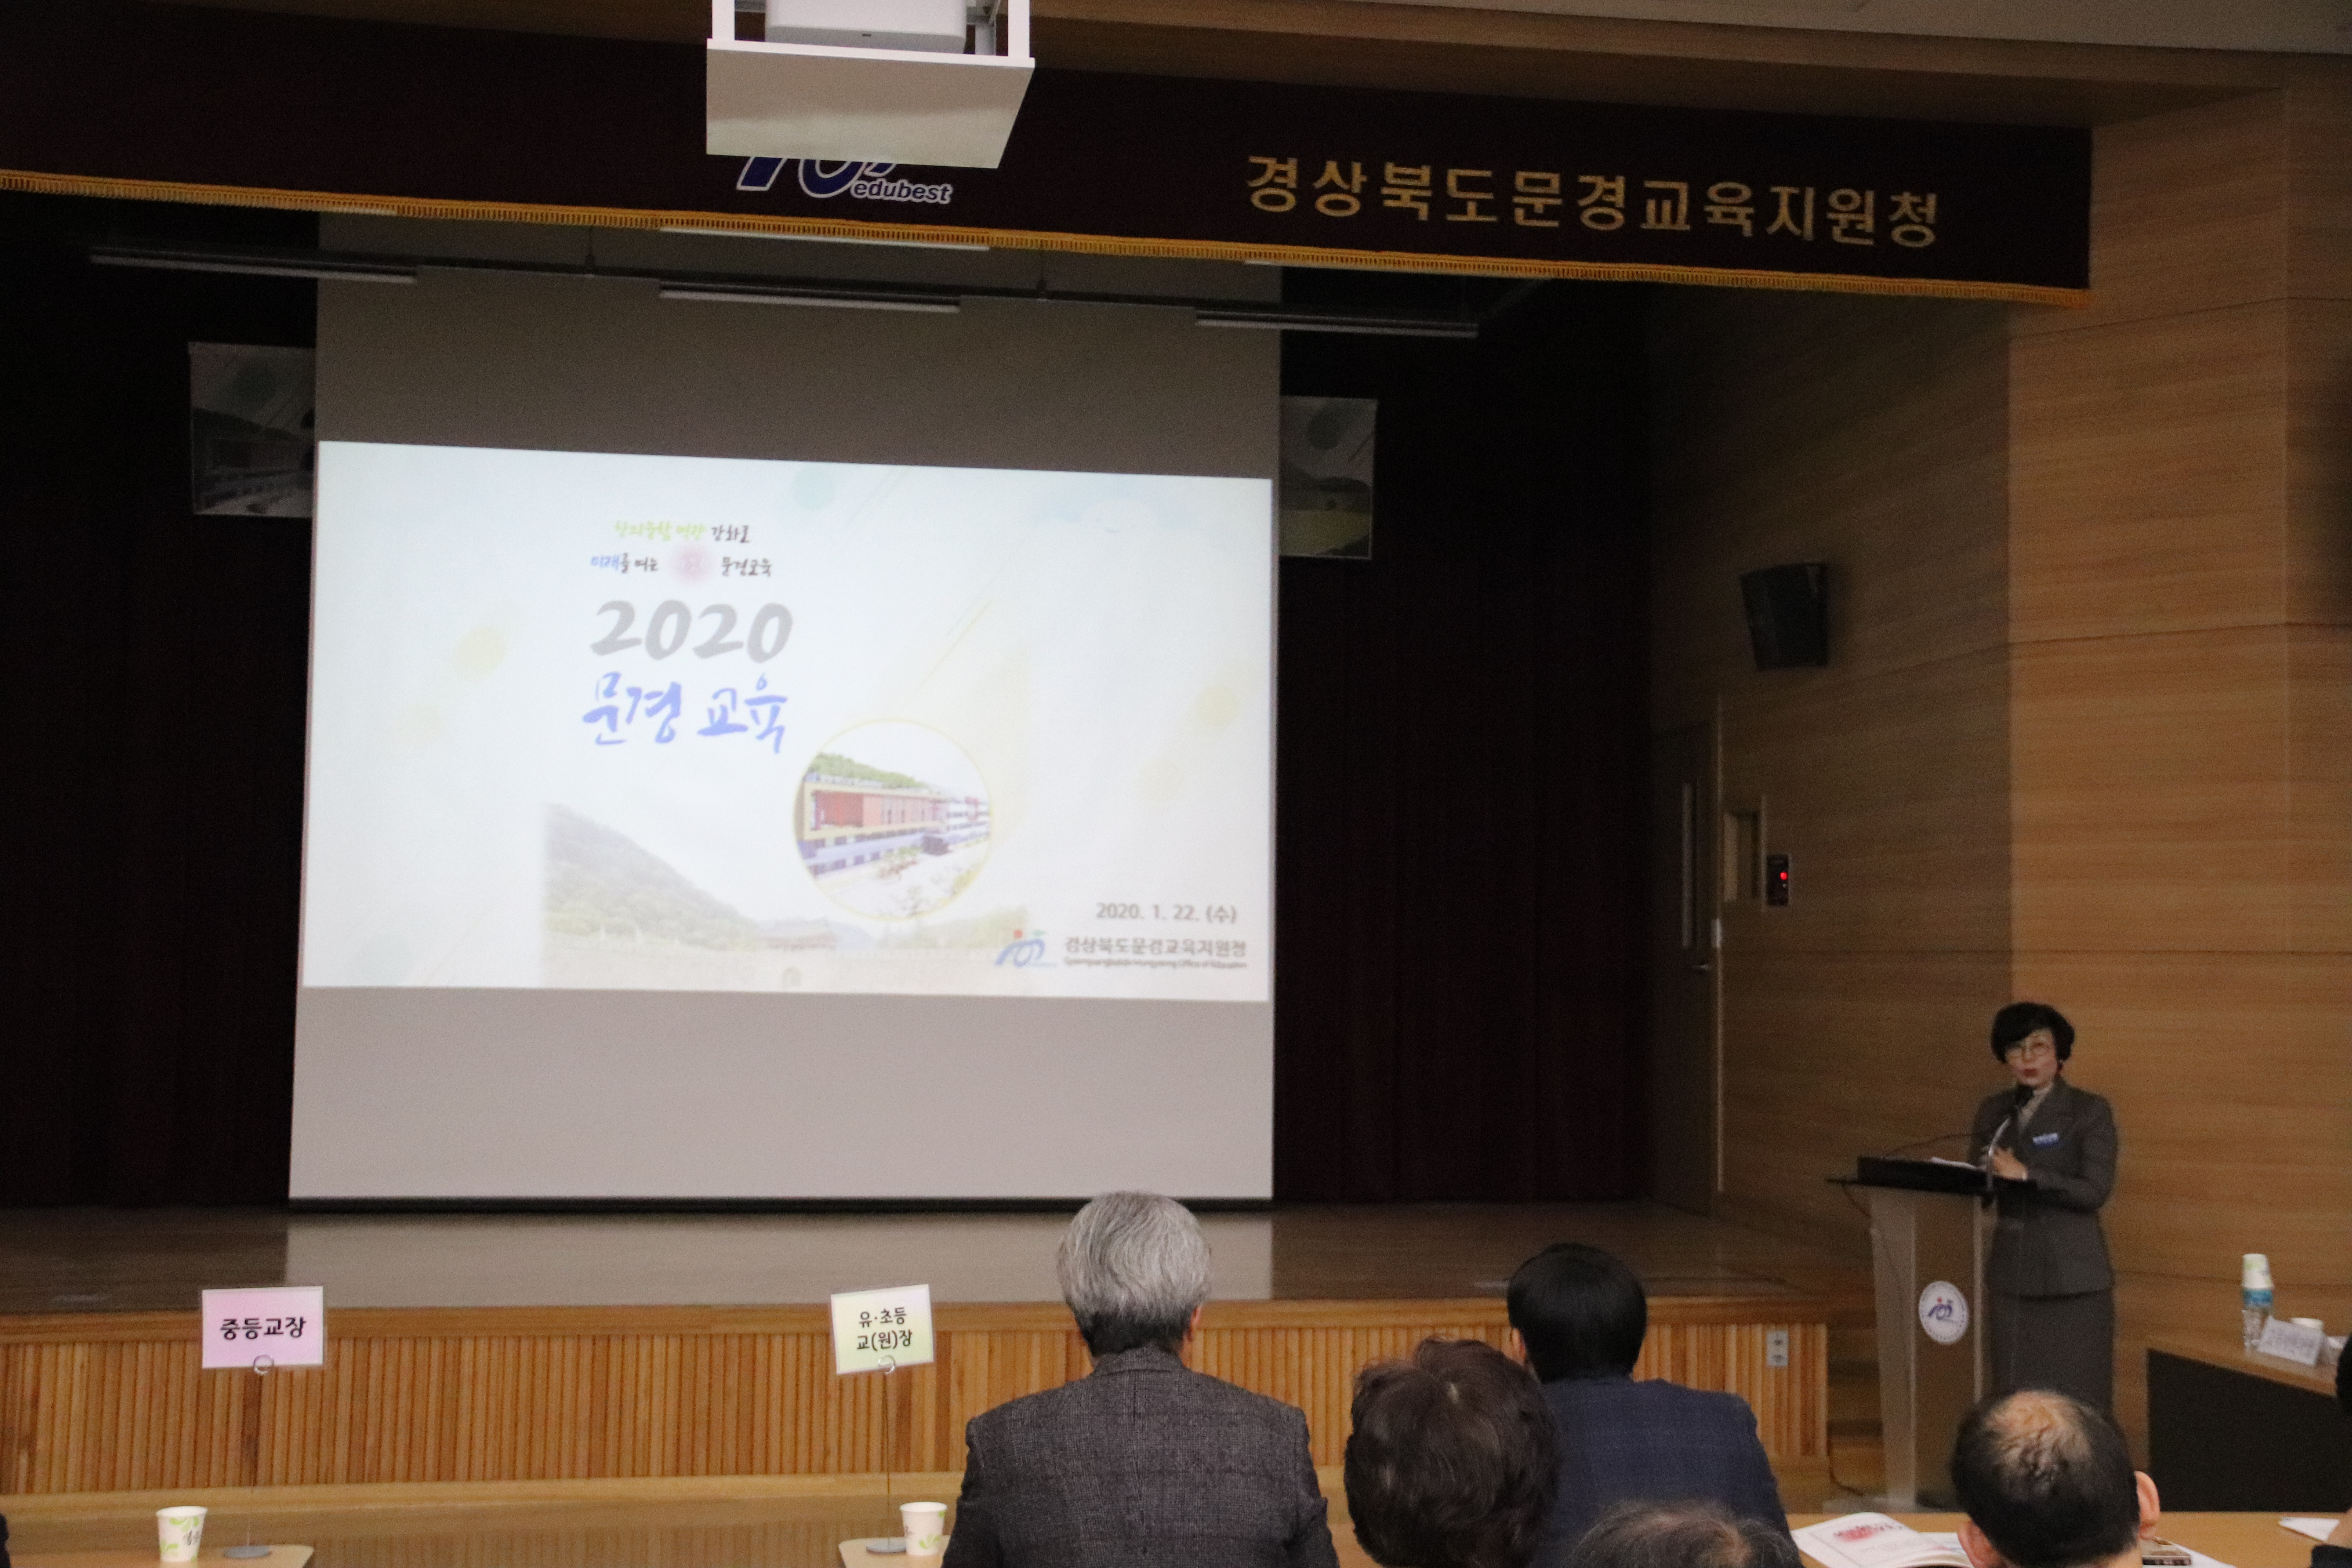 [문경교육지원청]2020 문경교육계획 설명회 실시4.JPG 확대 보기